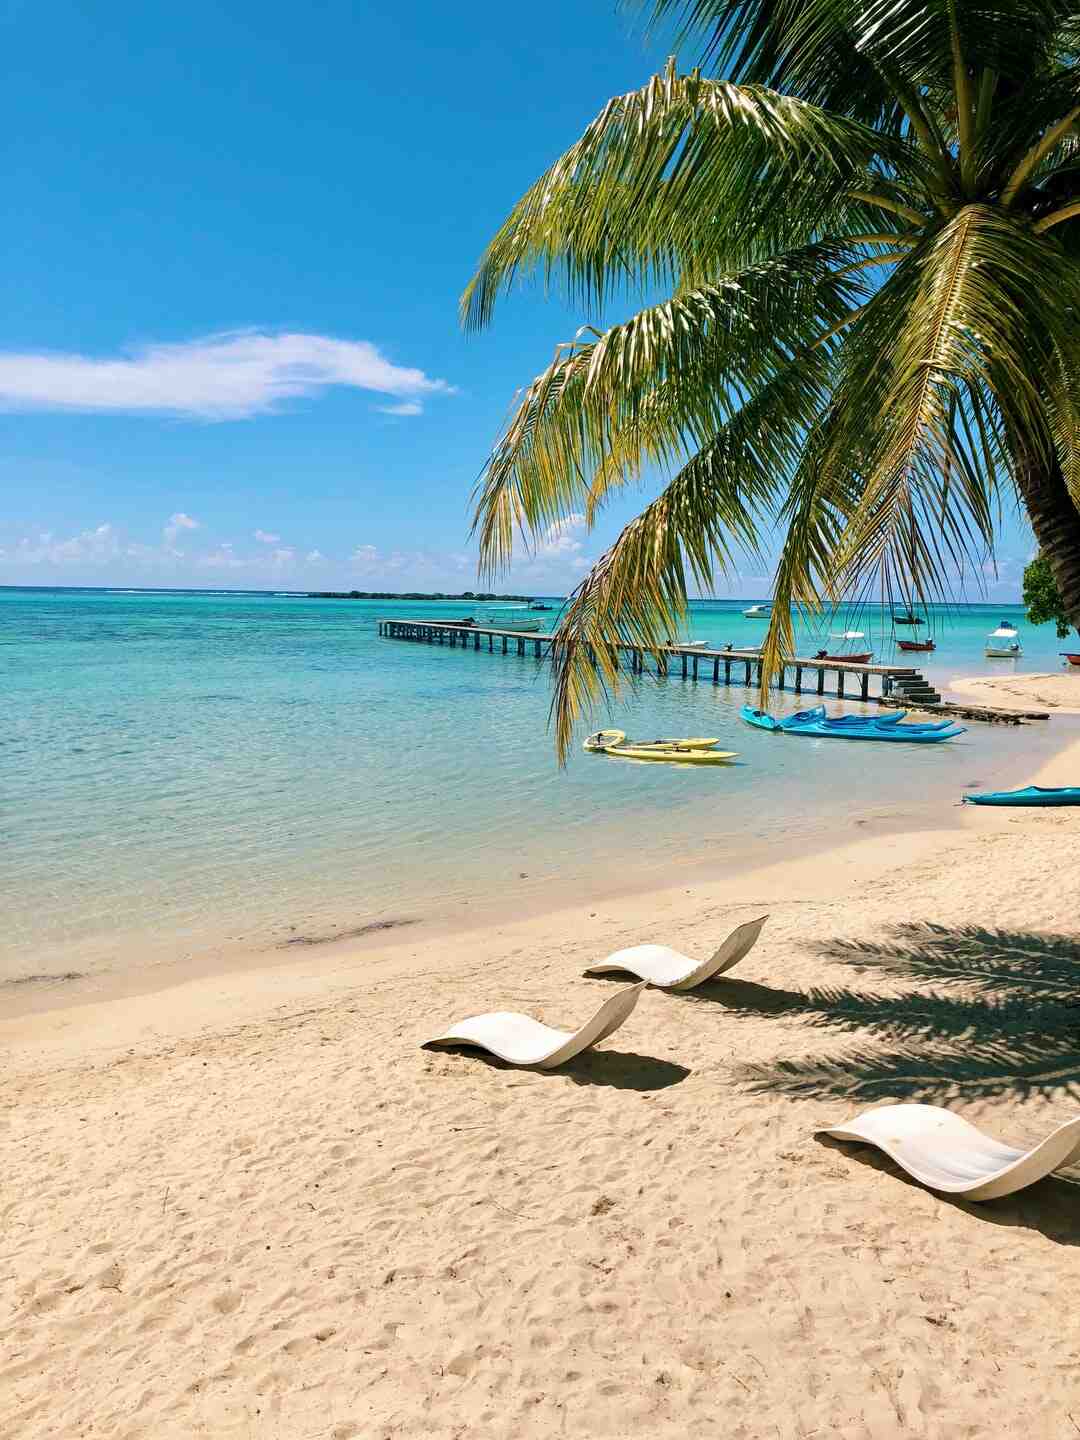 Tahiti'den Bora Bora'ya nasıl gidilir?